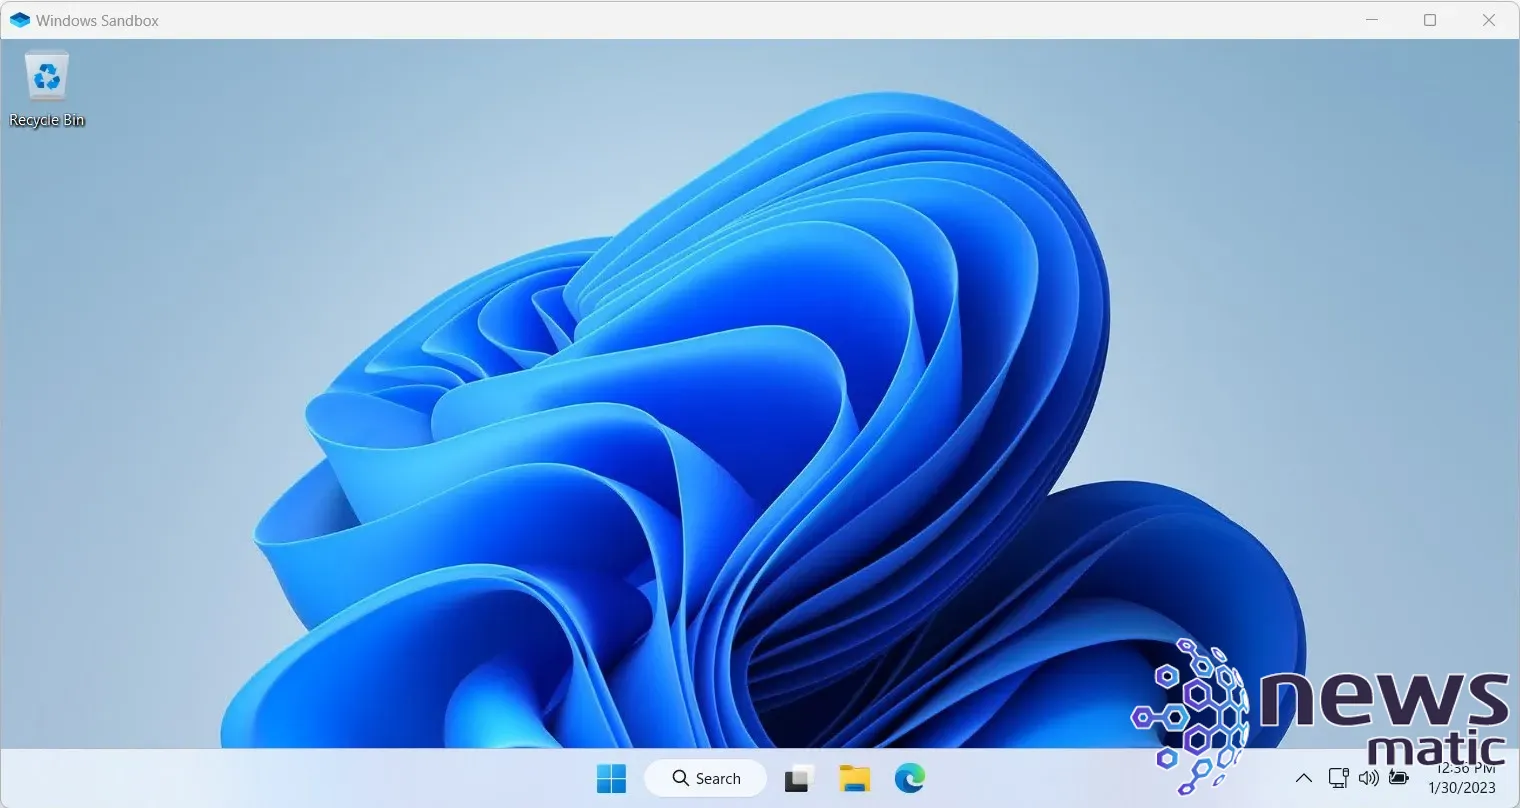 Cómo instalar y usar Windows 11 Sandbox: Guía paso a paso - Software | Imagen 7 Newsmatic